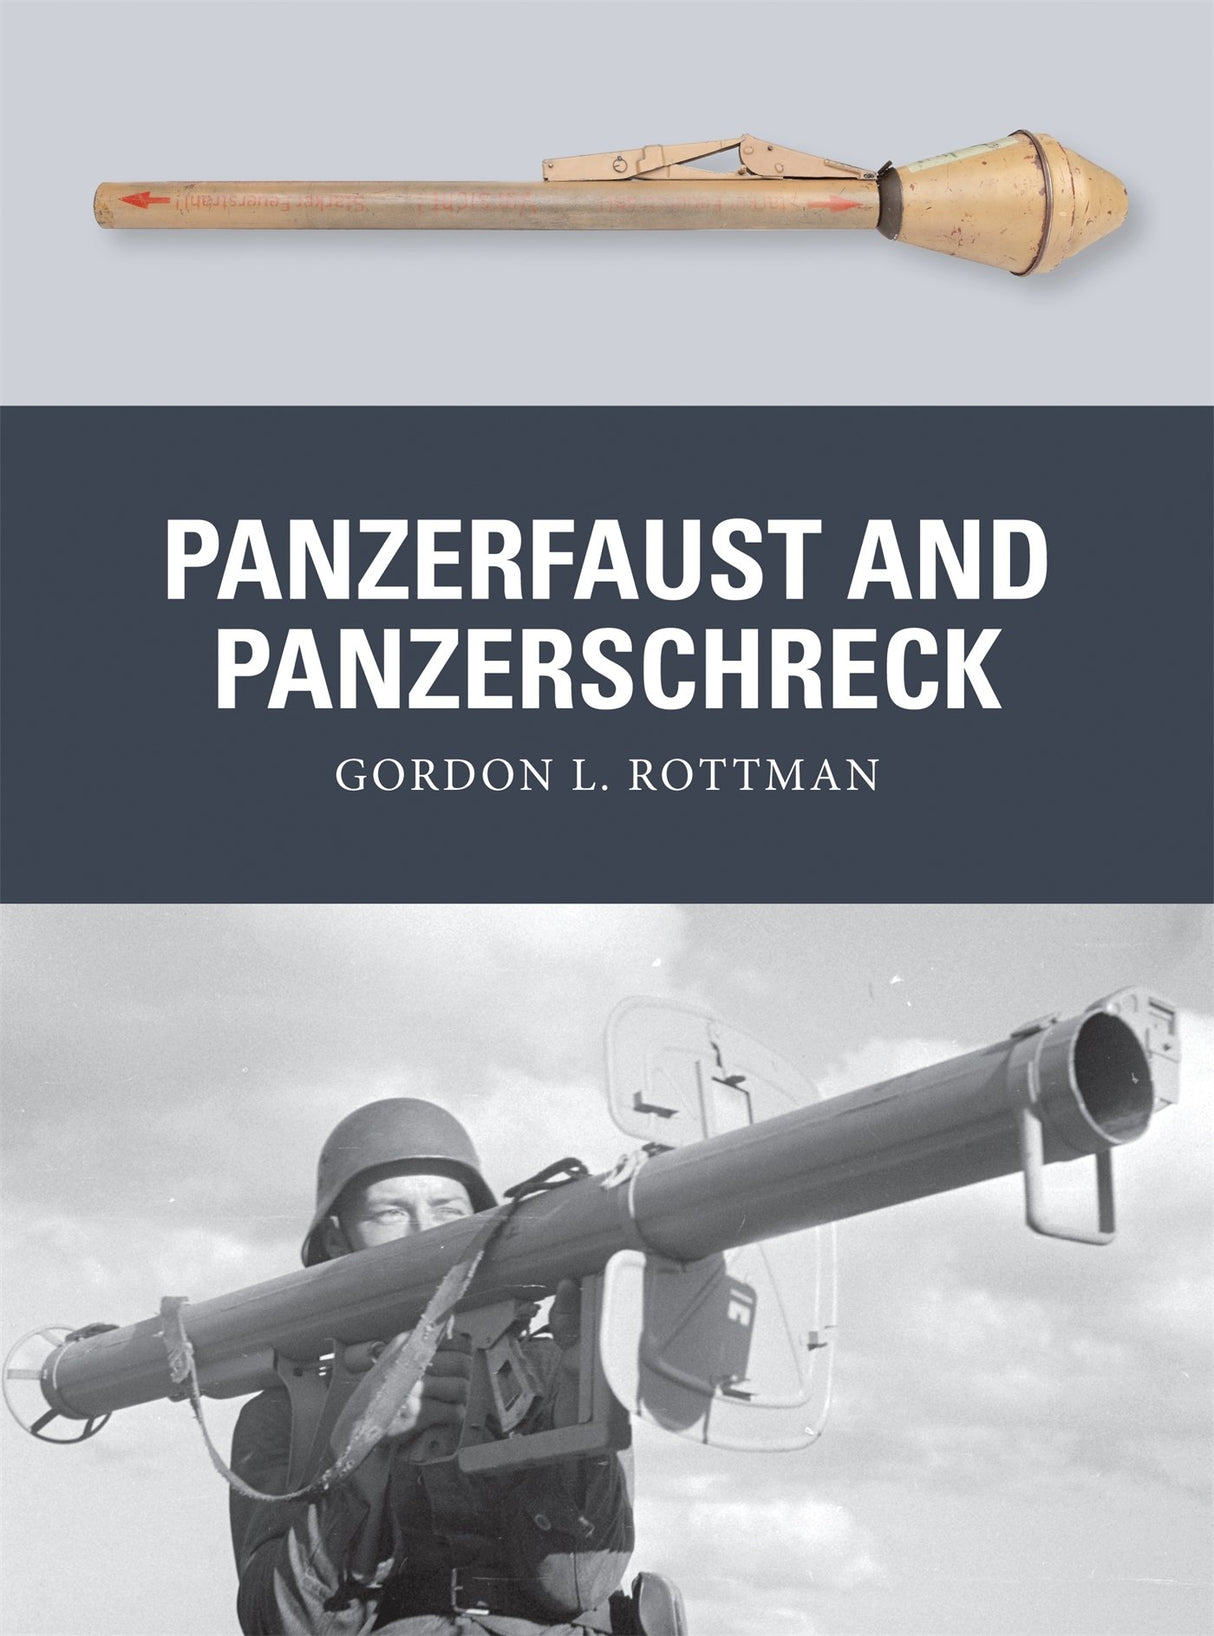 Panzerfaust and Panzerschreck - The Tank Museum